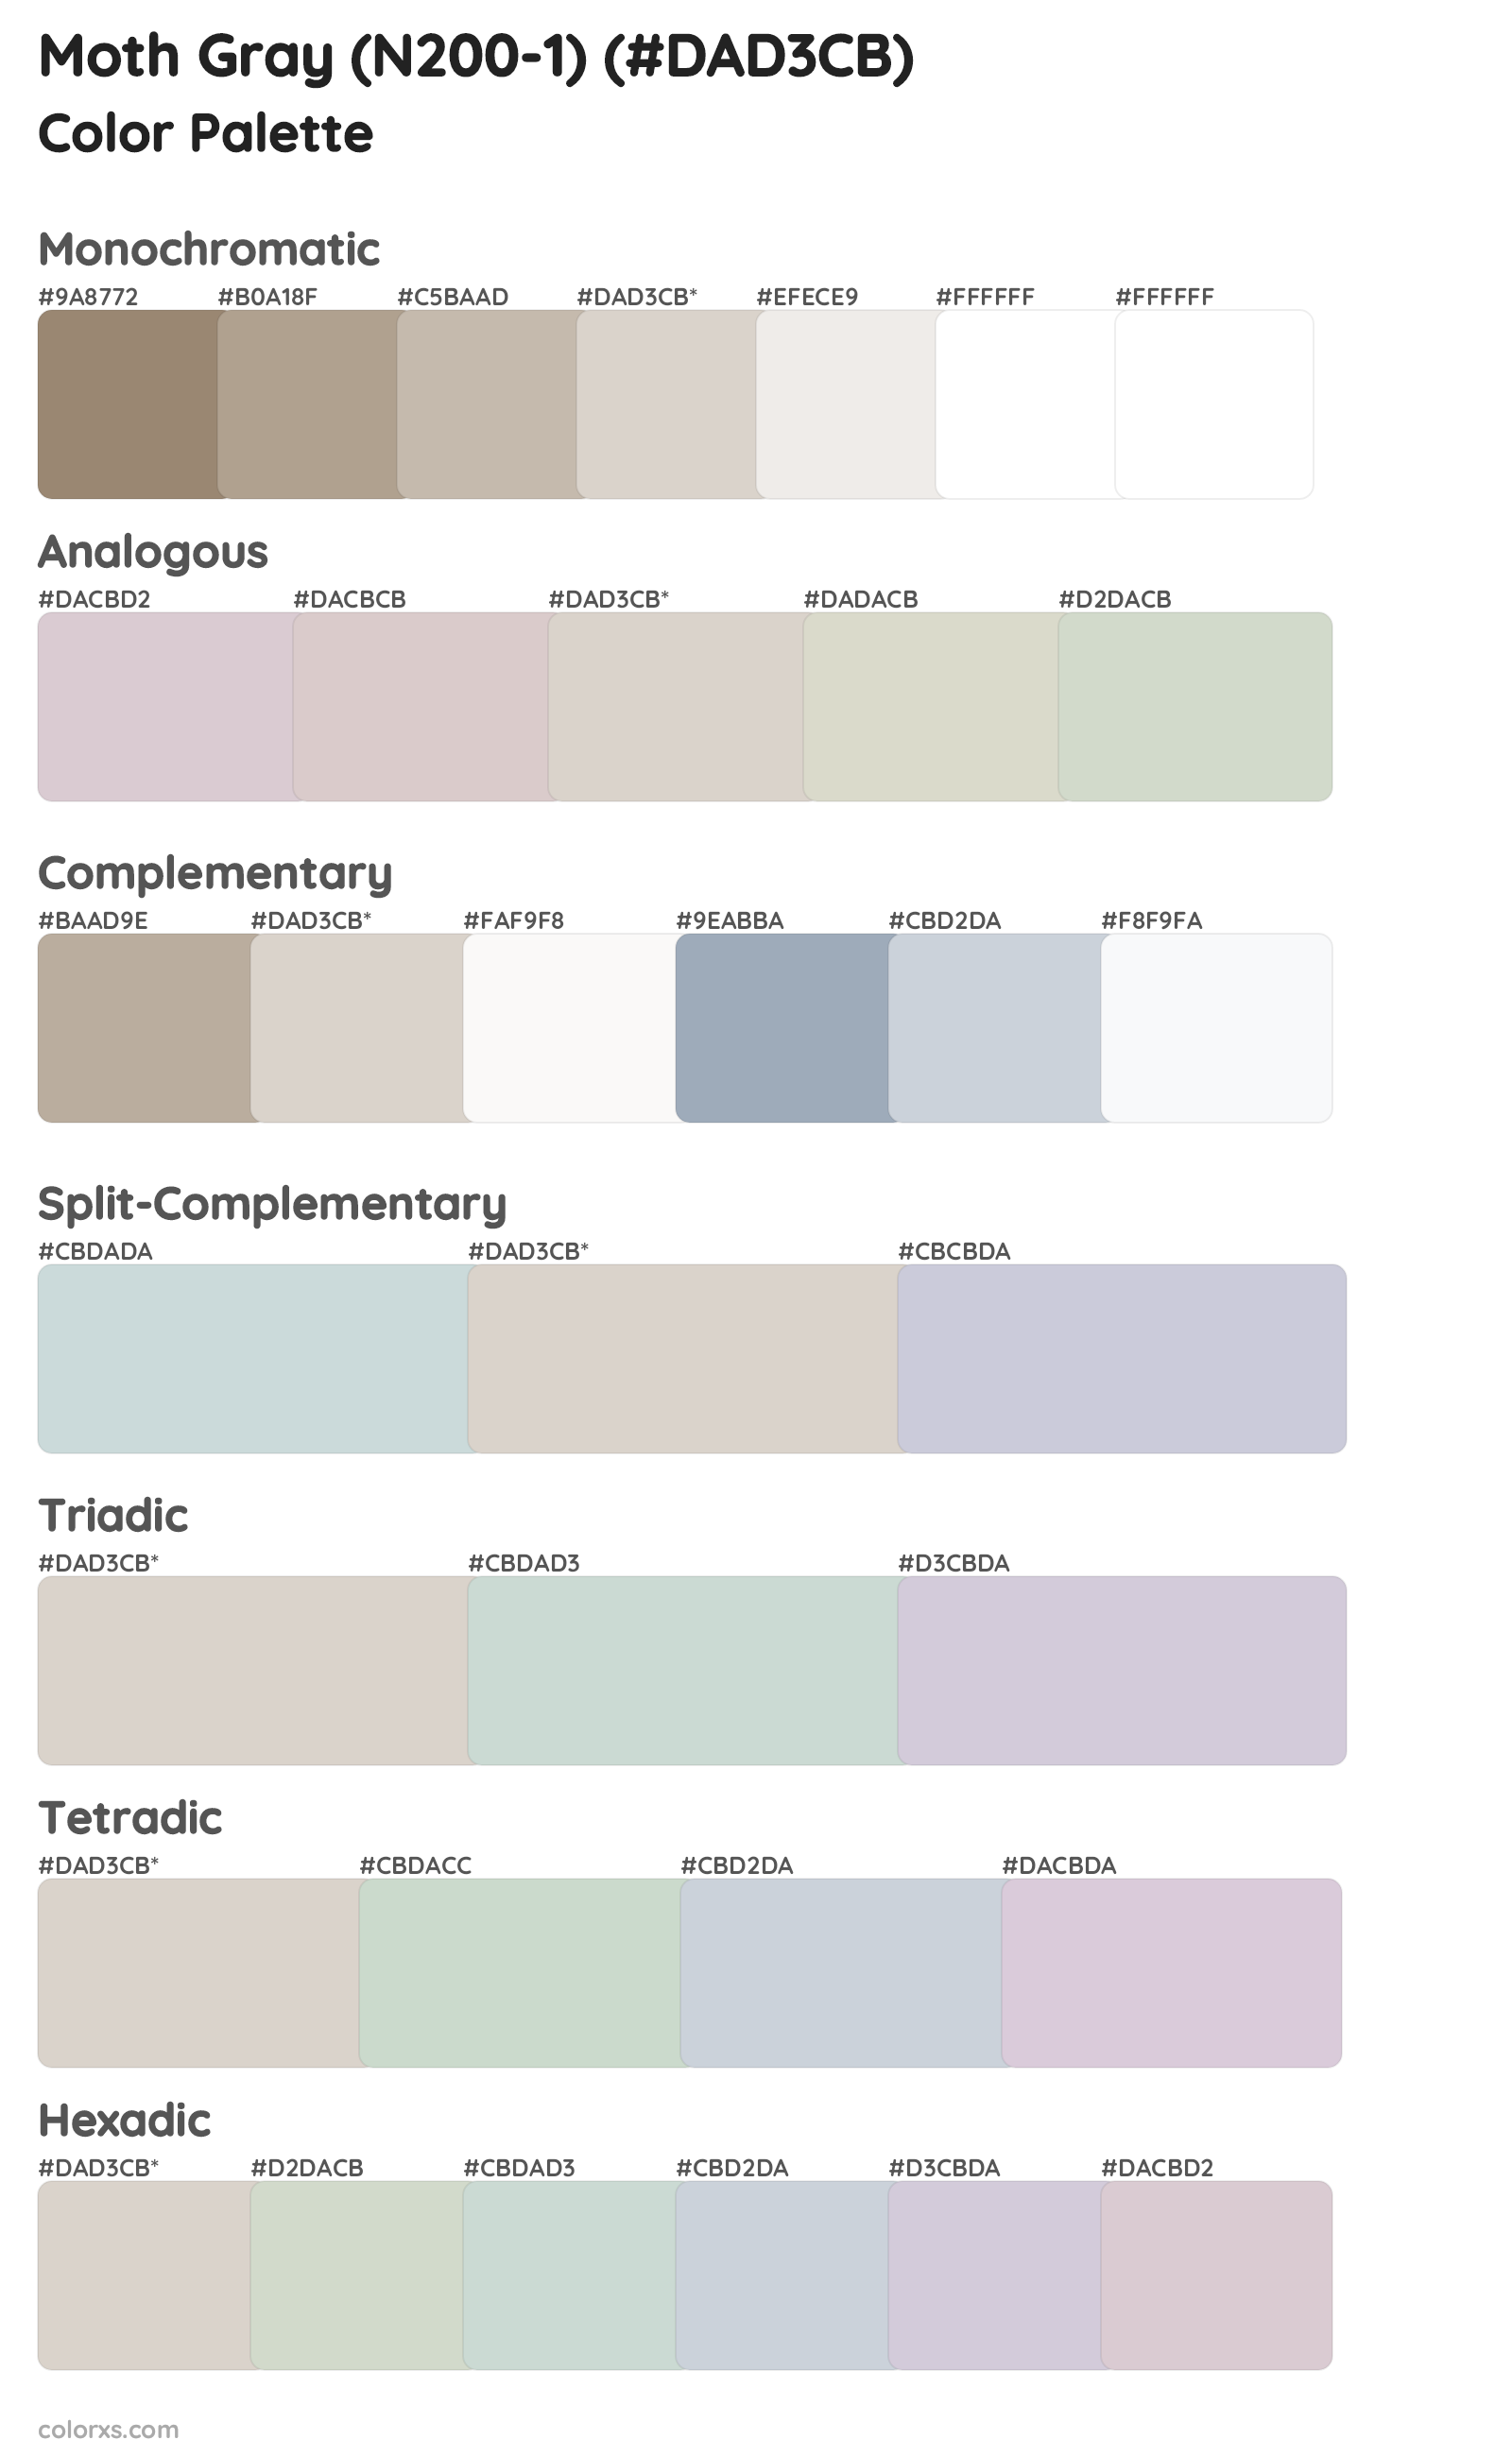 Moth Gray (N200-1) Color Scheme Palettes